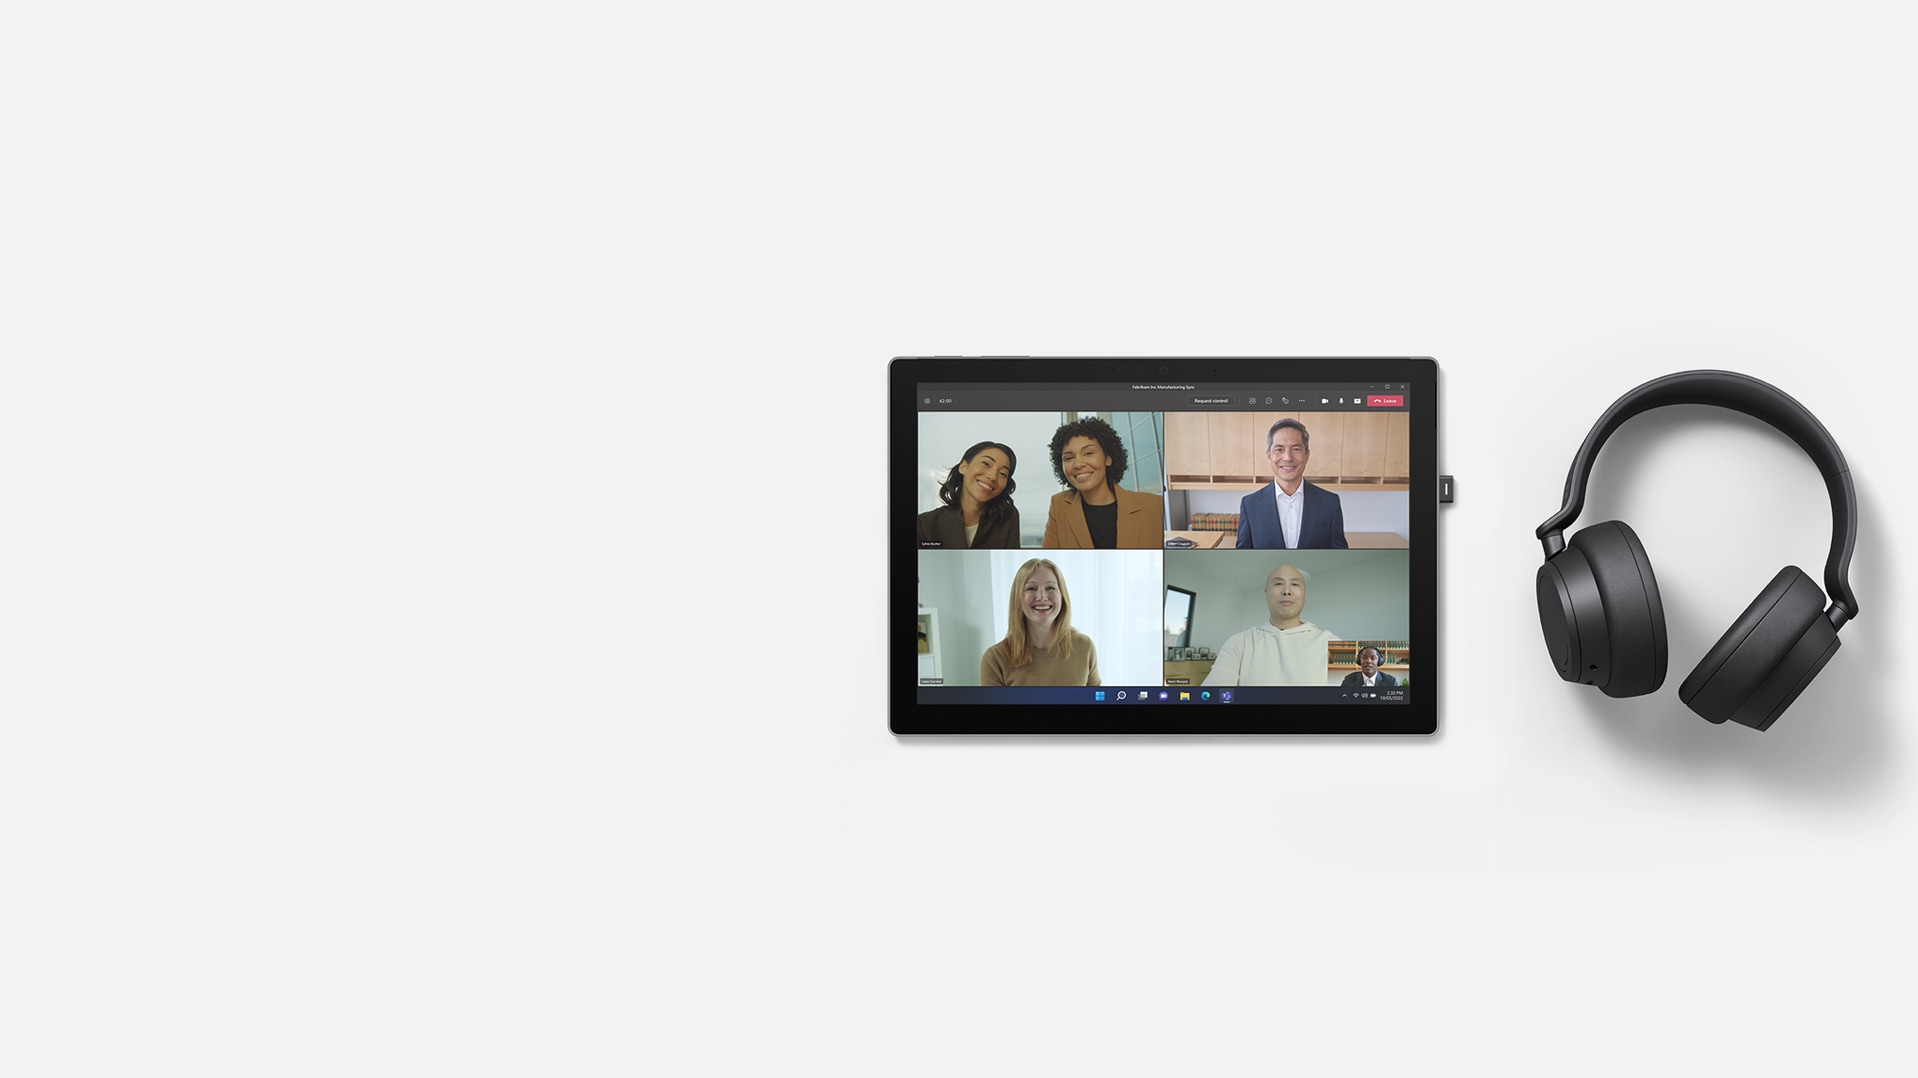 Microsoft Teamsin Yhdessä-tila Surface Pro 7+ -laitteessa, jonka oikealla puolella on Surface Headphones 2+